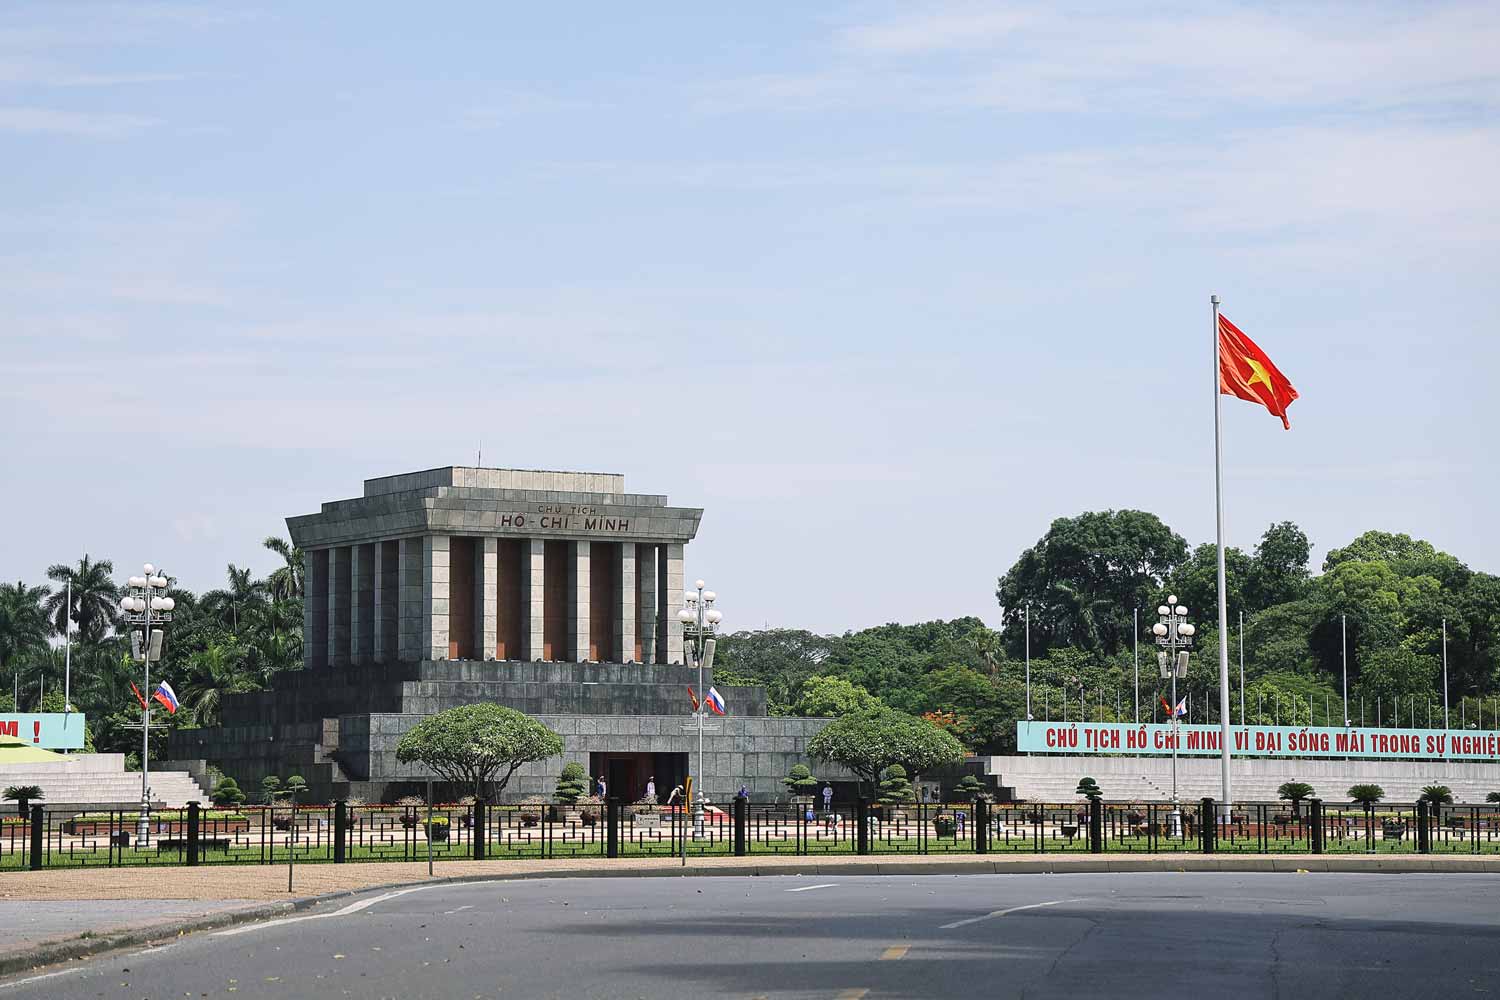 Lăng Bác được khởi công xây dựng ngày 2.9.1973 trên nền cũ của tòa lễ đài giữa Quảng trường Ba Đình, nơi Chủ tịch Hồ Chí Minh đọc bản Tuyên ngôn Độc lập. Đây là một trong những công trình kiến trúc mang tầm quốc gia, thể hiện quan hệ bền chặt của Liên Xô đối Việt Nam.